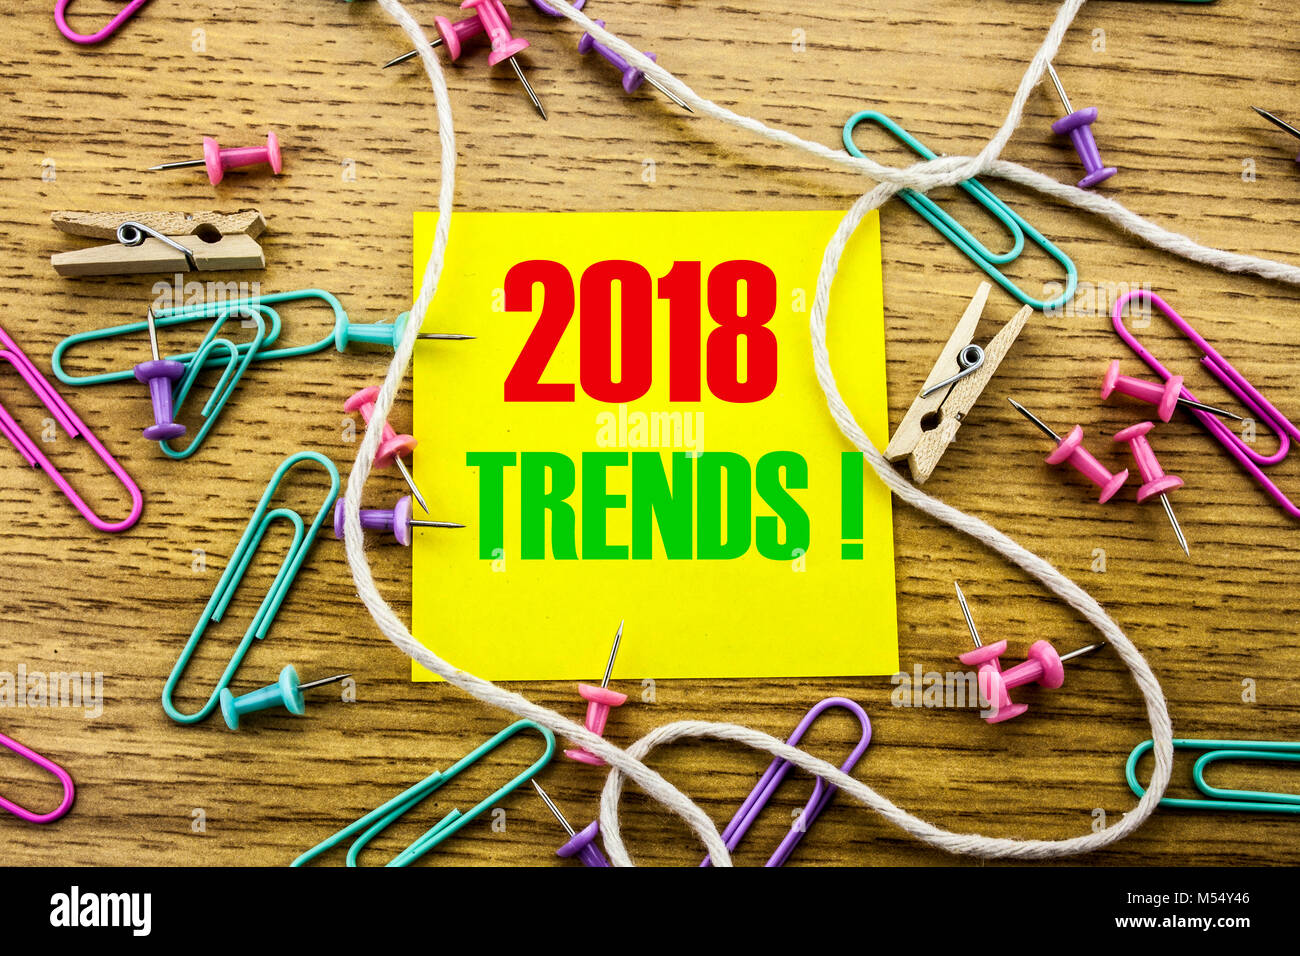 Trends 2018 text auf gelbe Haftnotiz auf Holz- Hintergrund. Minimalen Begriff. 2018 Trends. Stockfoto